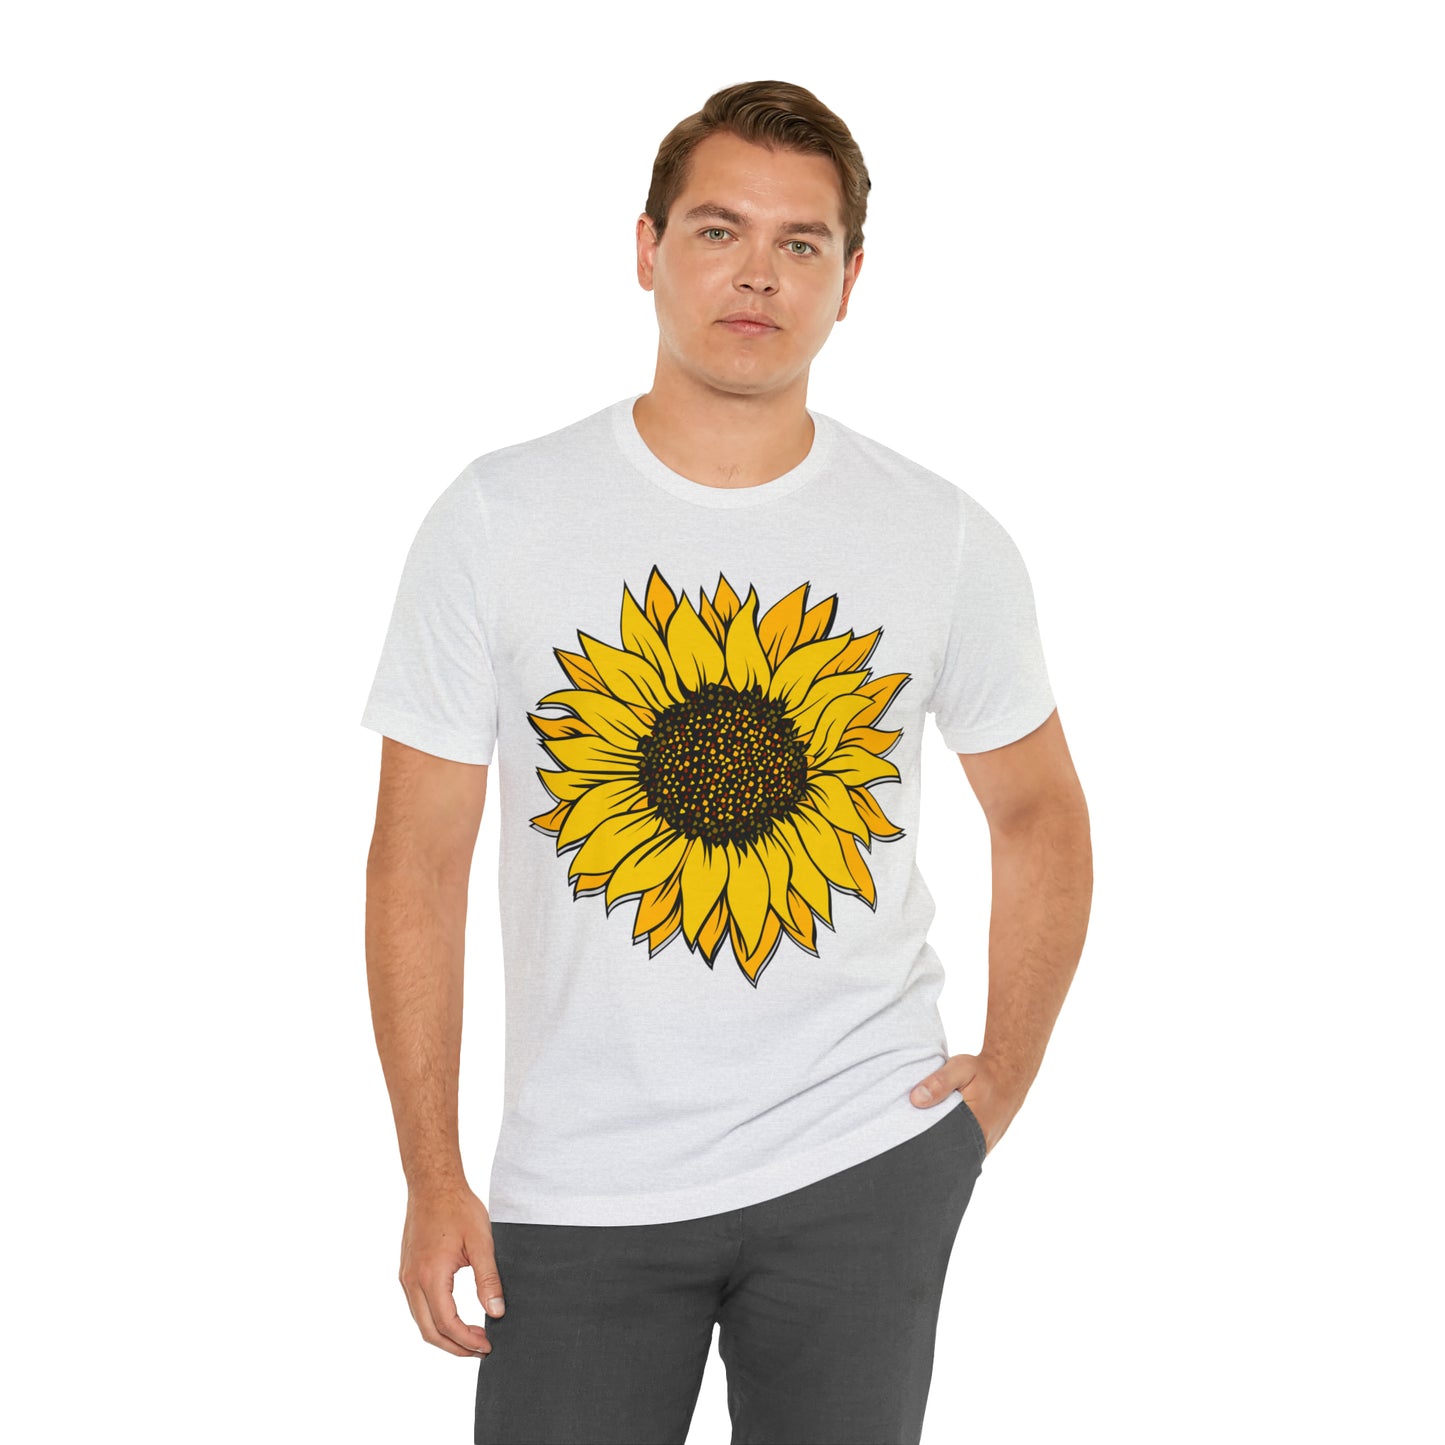 Sunflower Shirt, Floral Tee Shirt, Flower Shirt, Garden Shirt, Womens Fall Summer Shirt Sunshine Tee, Gift for Gardener, Nature lover shirt